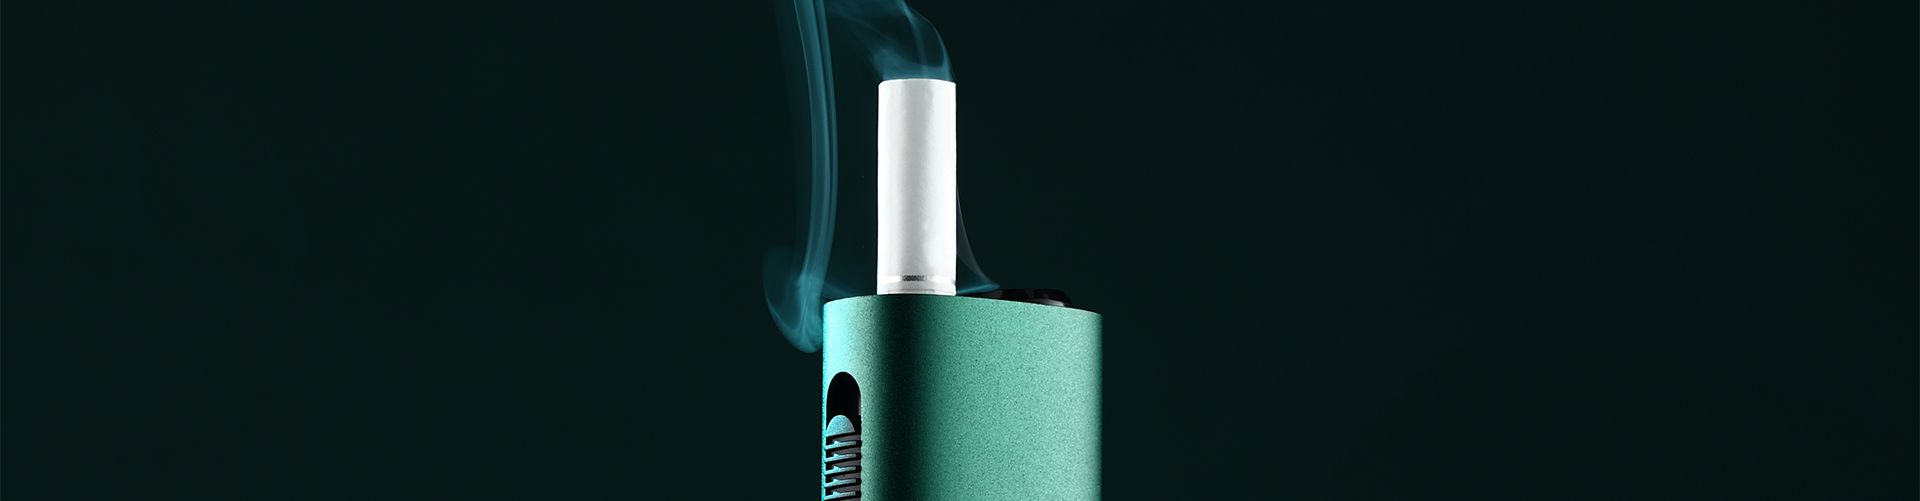 Шесть ключевых различий между сжиганием табака и нагреванием табака